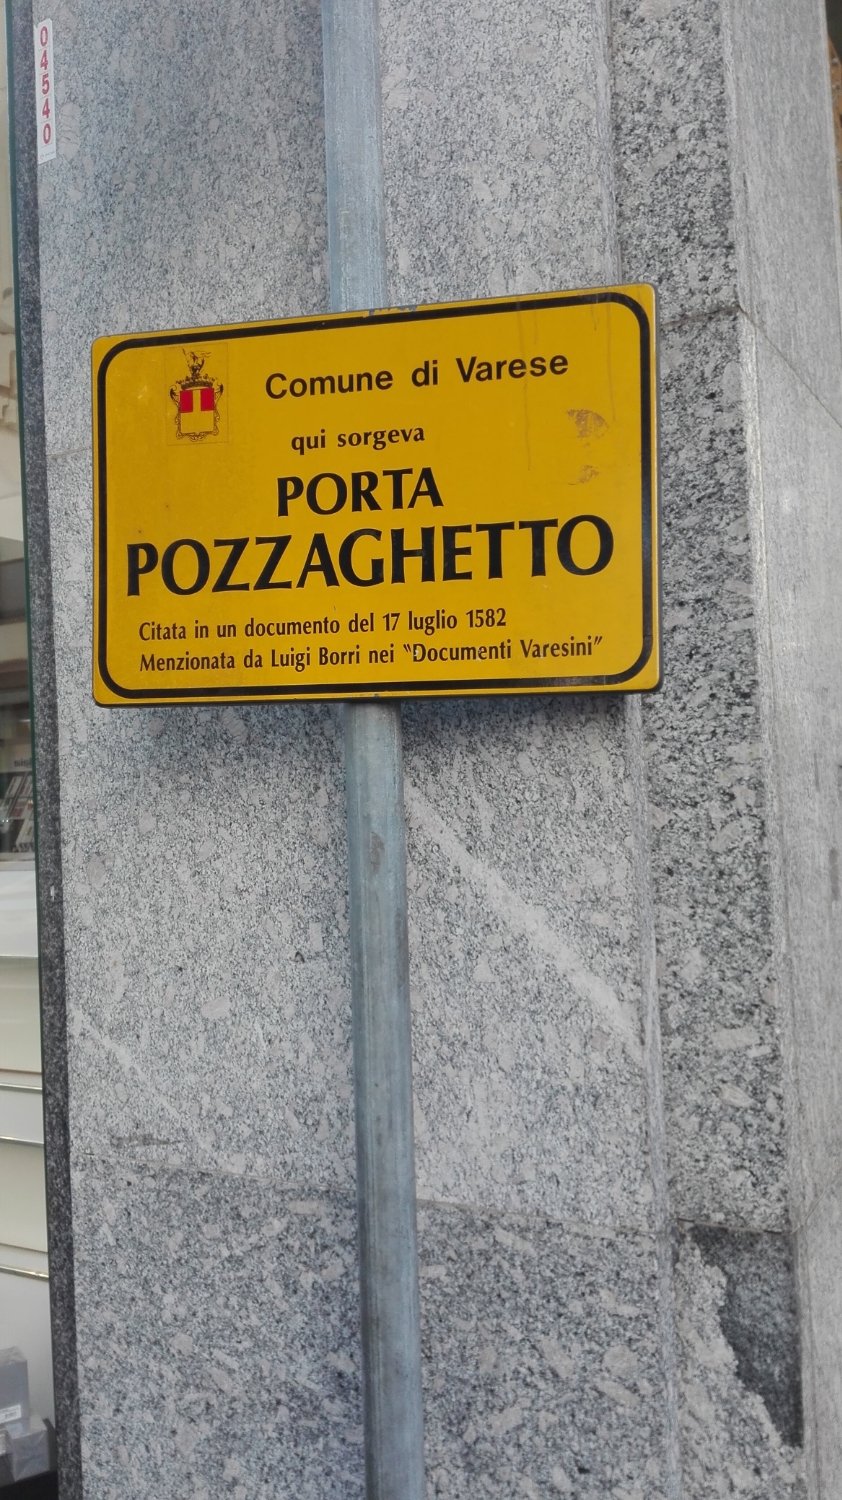 Porta Pozzaghetto